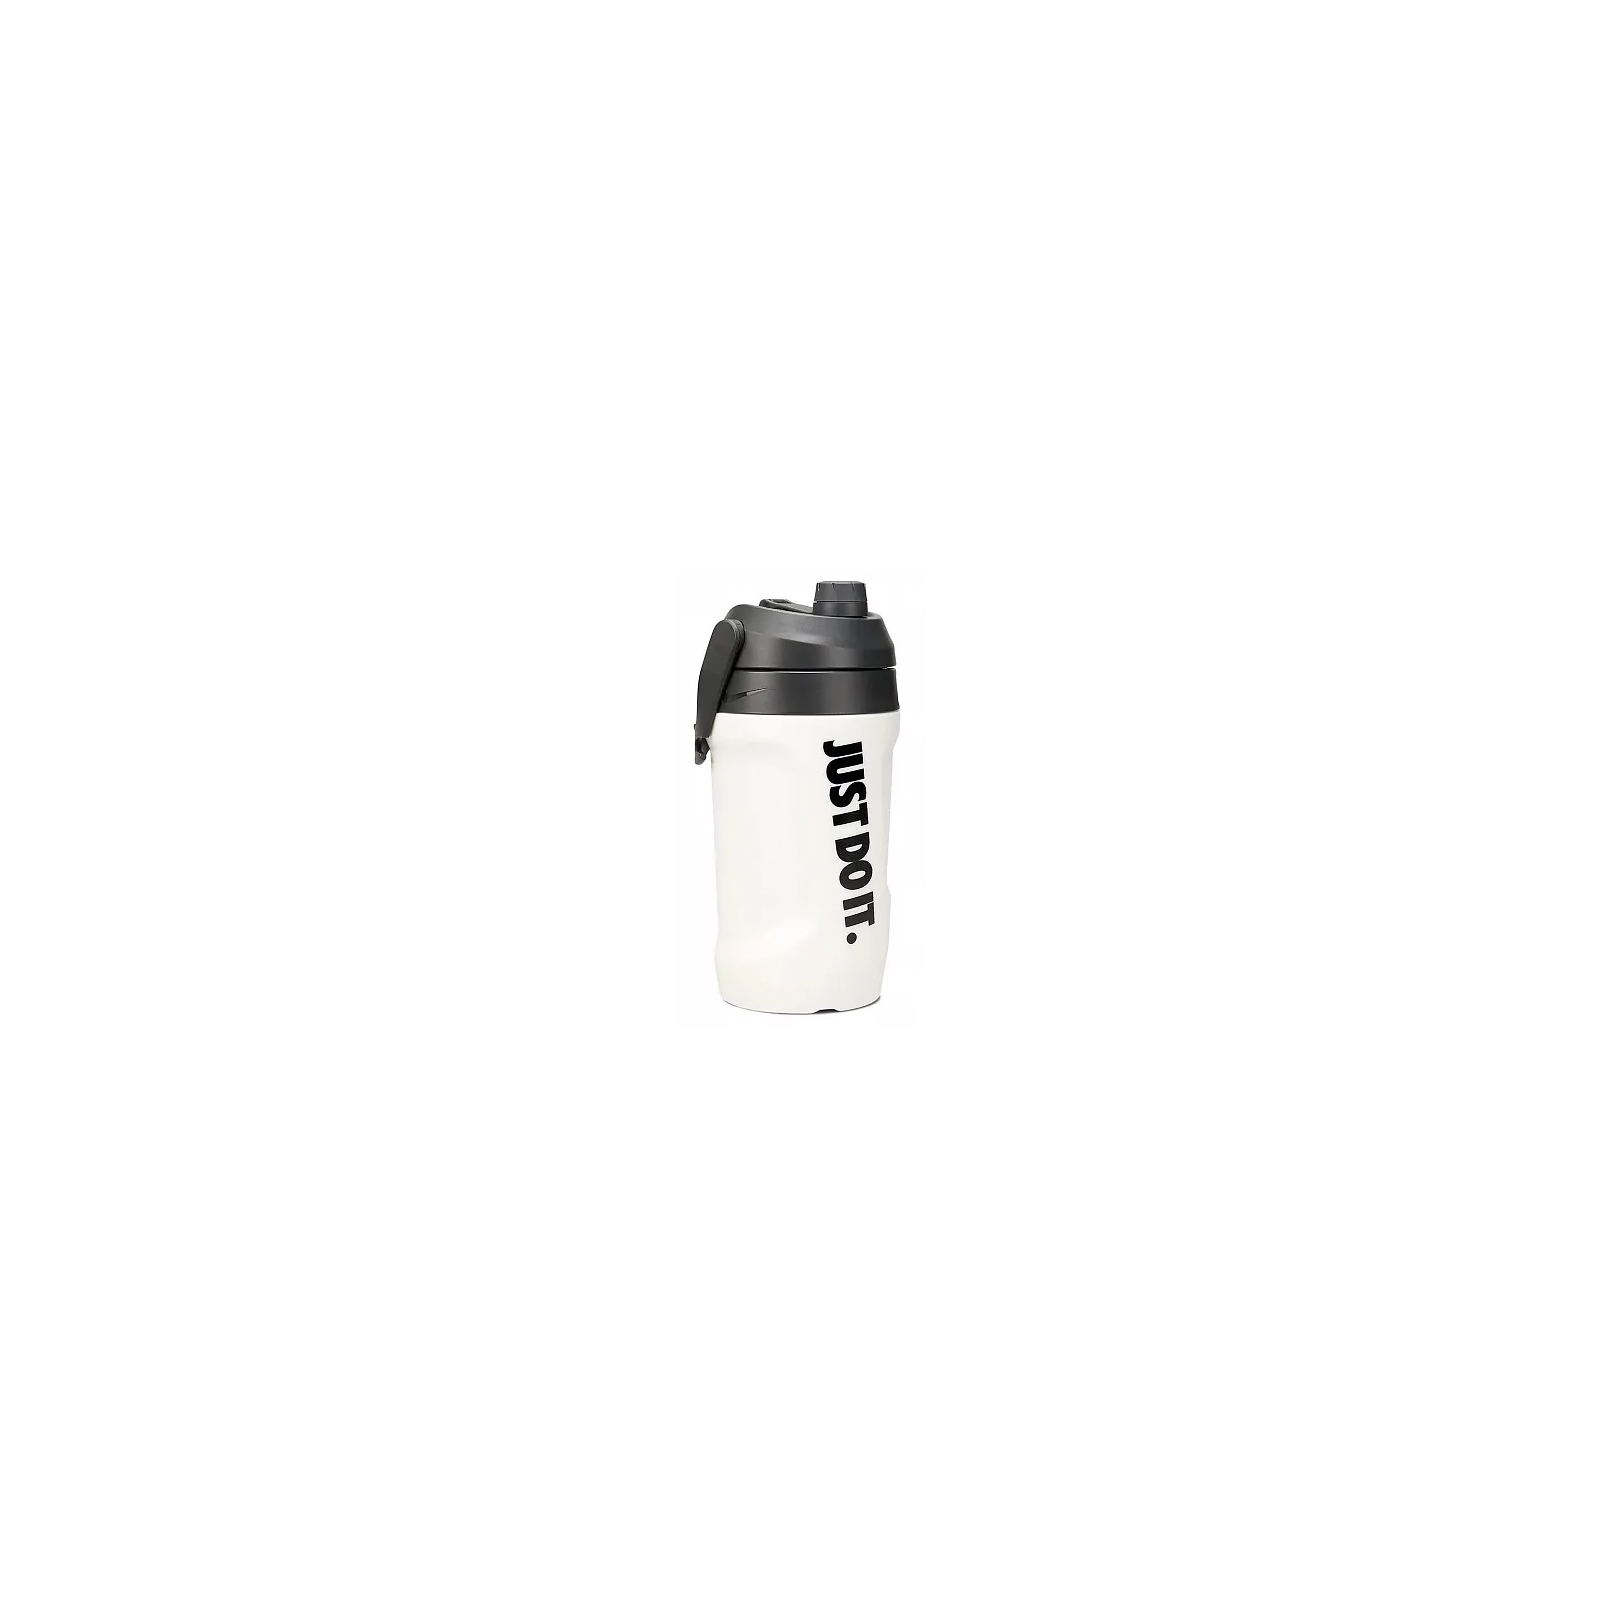 Пляшка для води Nike Fuel Jug 64 OZ синій, чорний 1893 мл N.100.3111.476.64 (887791410825)